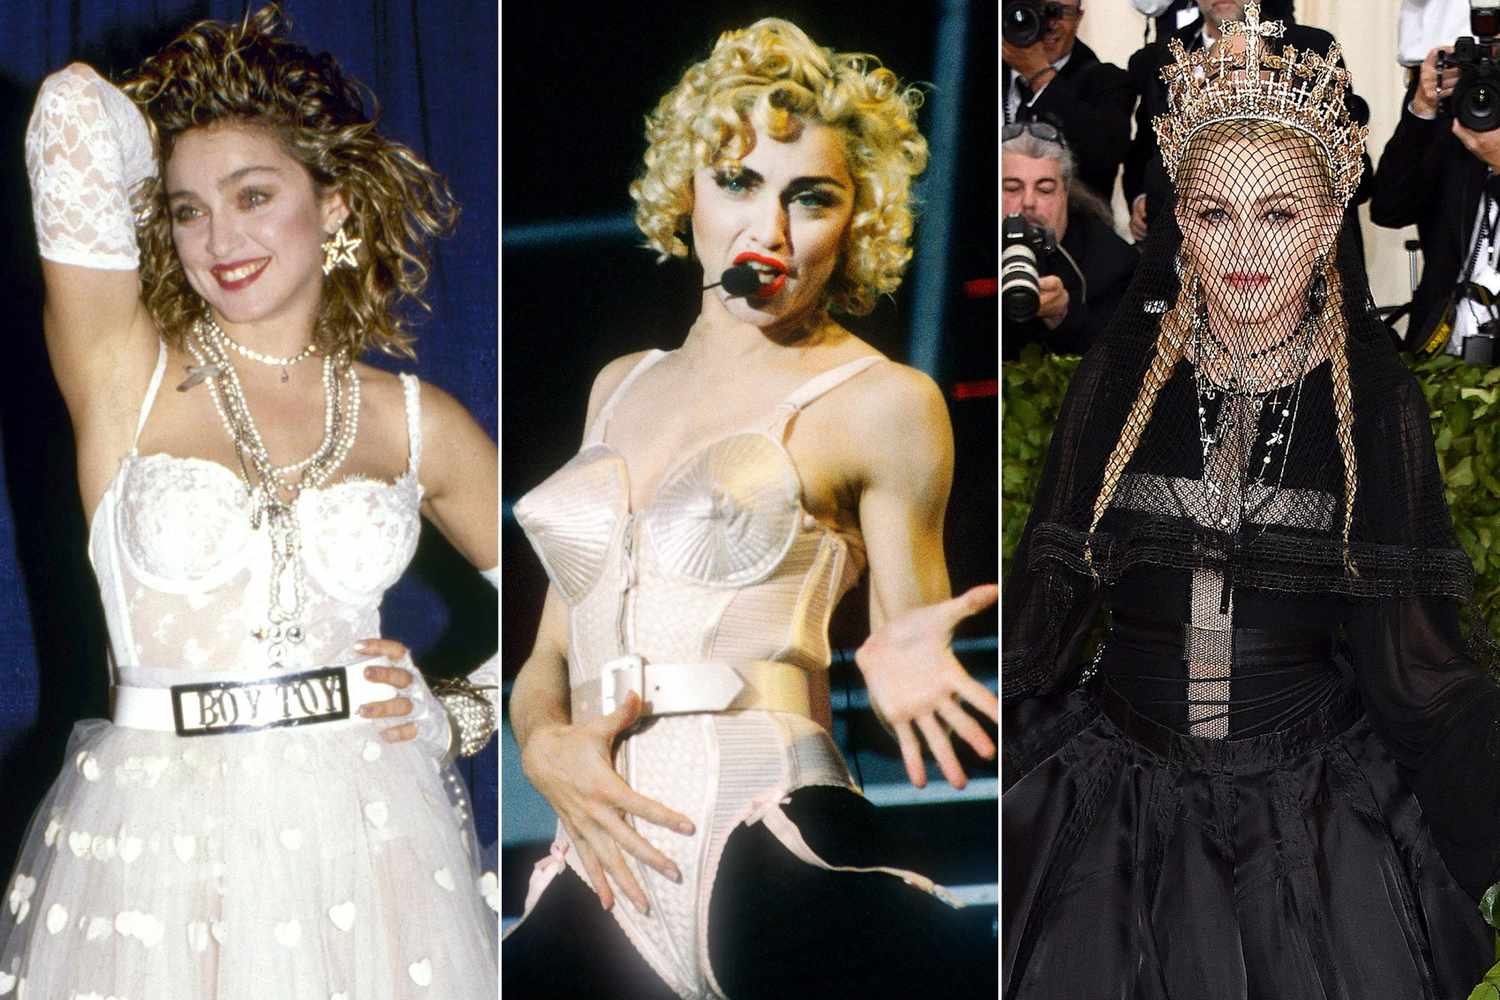 Colagem mostra foto de Madonna em três momentos diferentes de sua carreira. A primeira após apresentar Like a Virgin no VMA, a segunda apresentando Vogue, e a terceira no tapete vermelho de uma premiação.